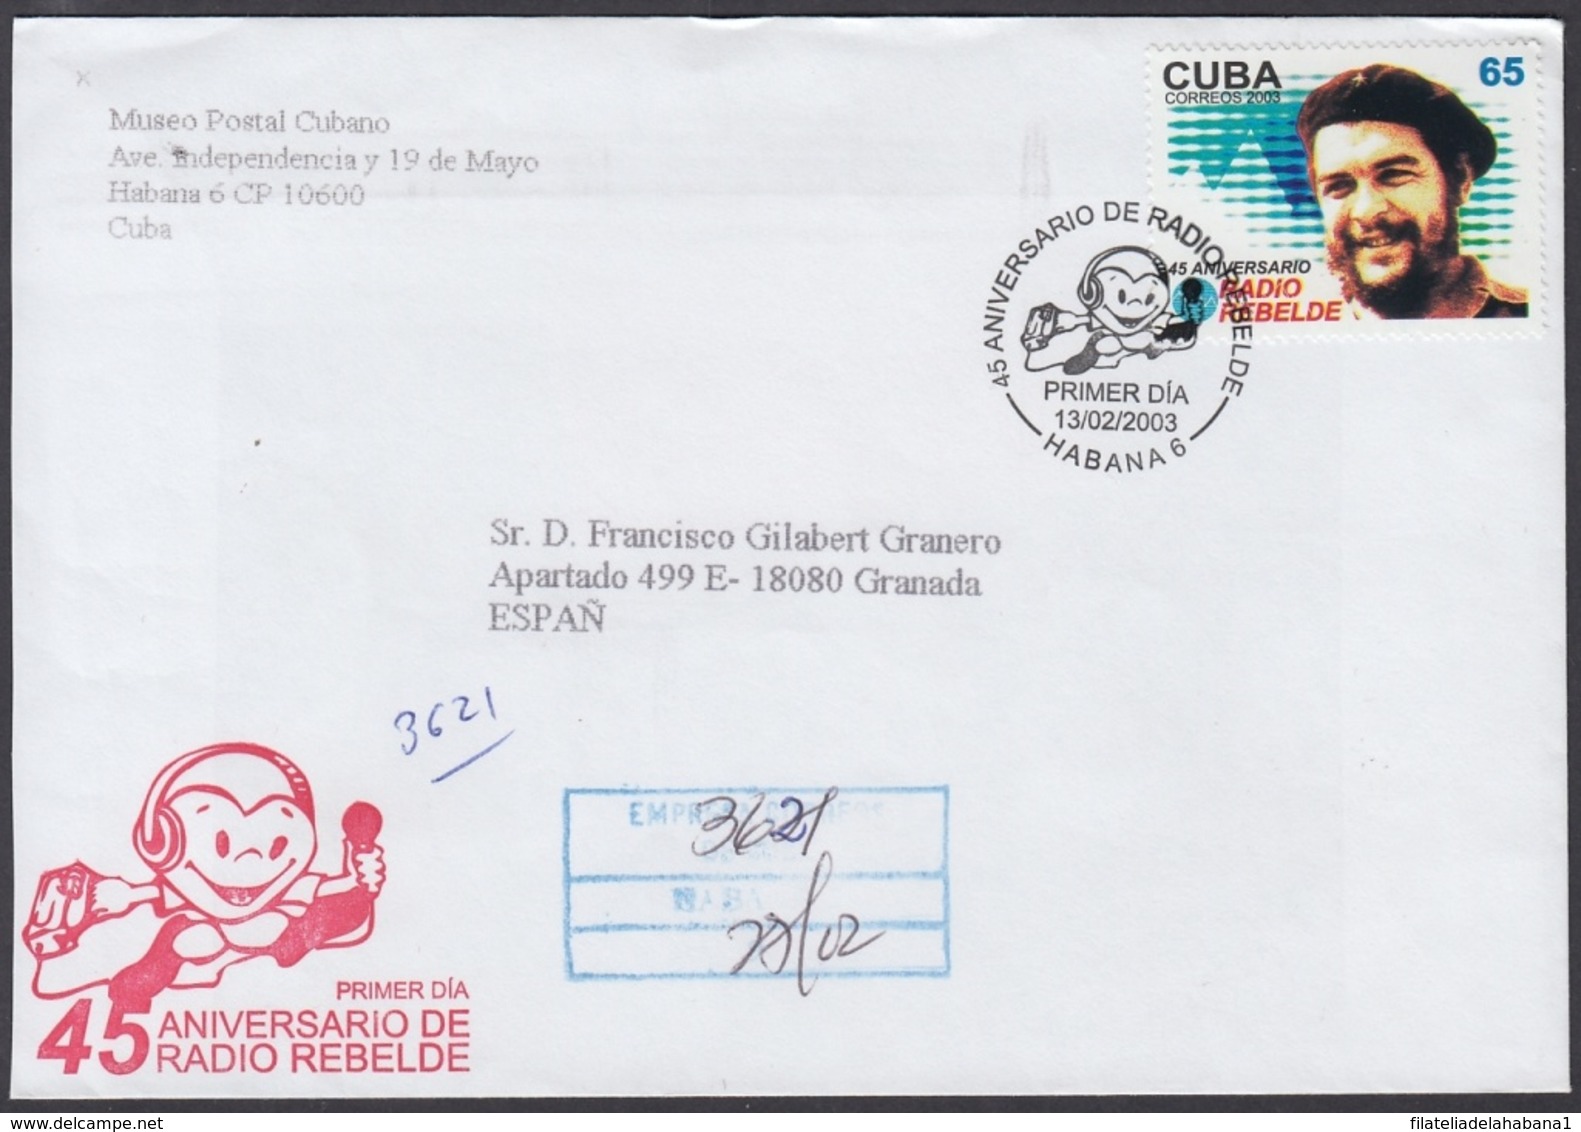 2003-FDC-61 CUBA FDC 2003. REGISTERED COVER TO SPAIN. 45 ANIV RADIO REBELDE, ERNESTO CHE GUEVARA. - FDC